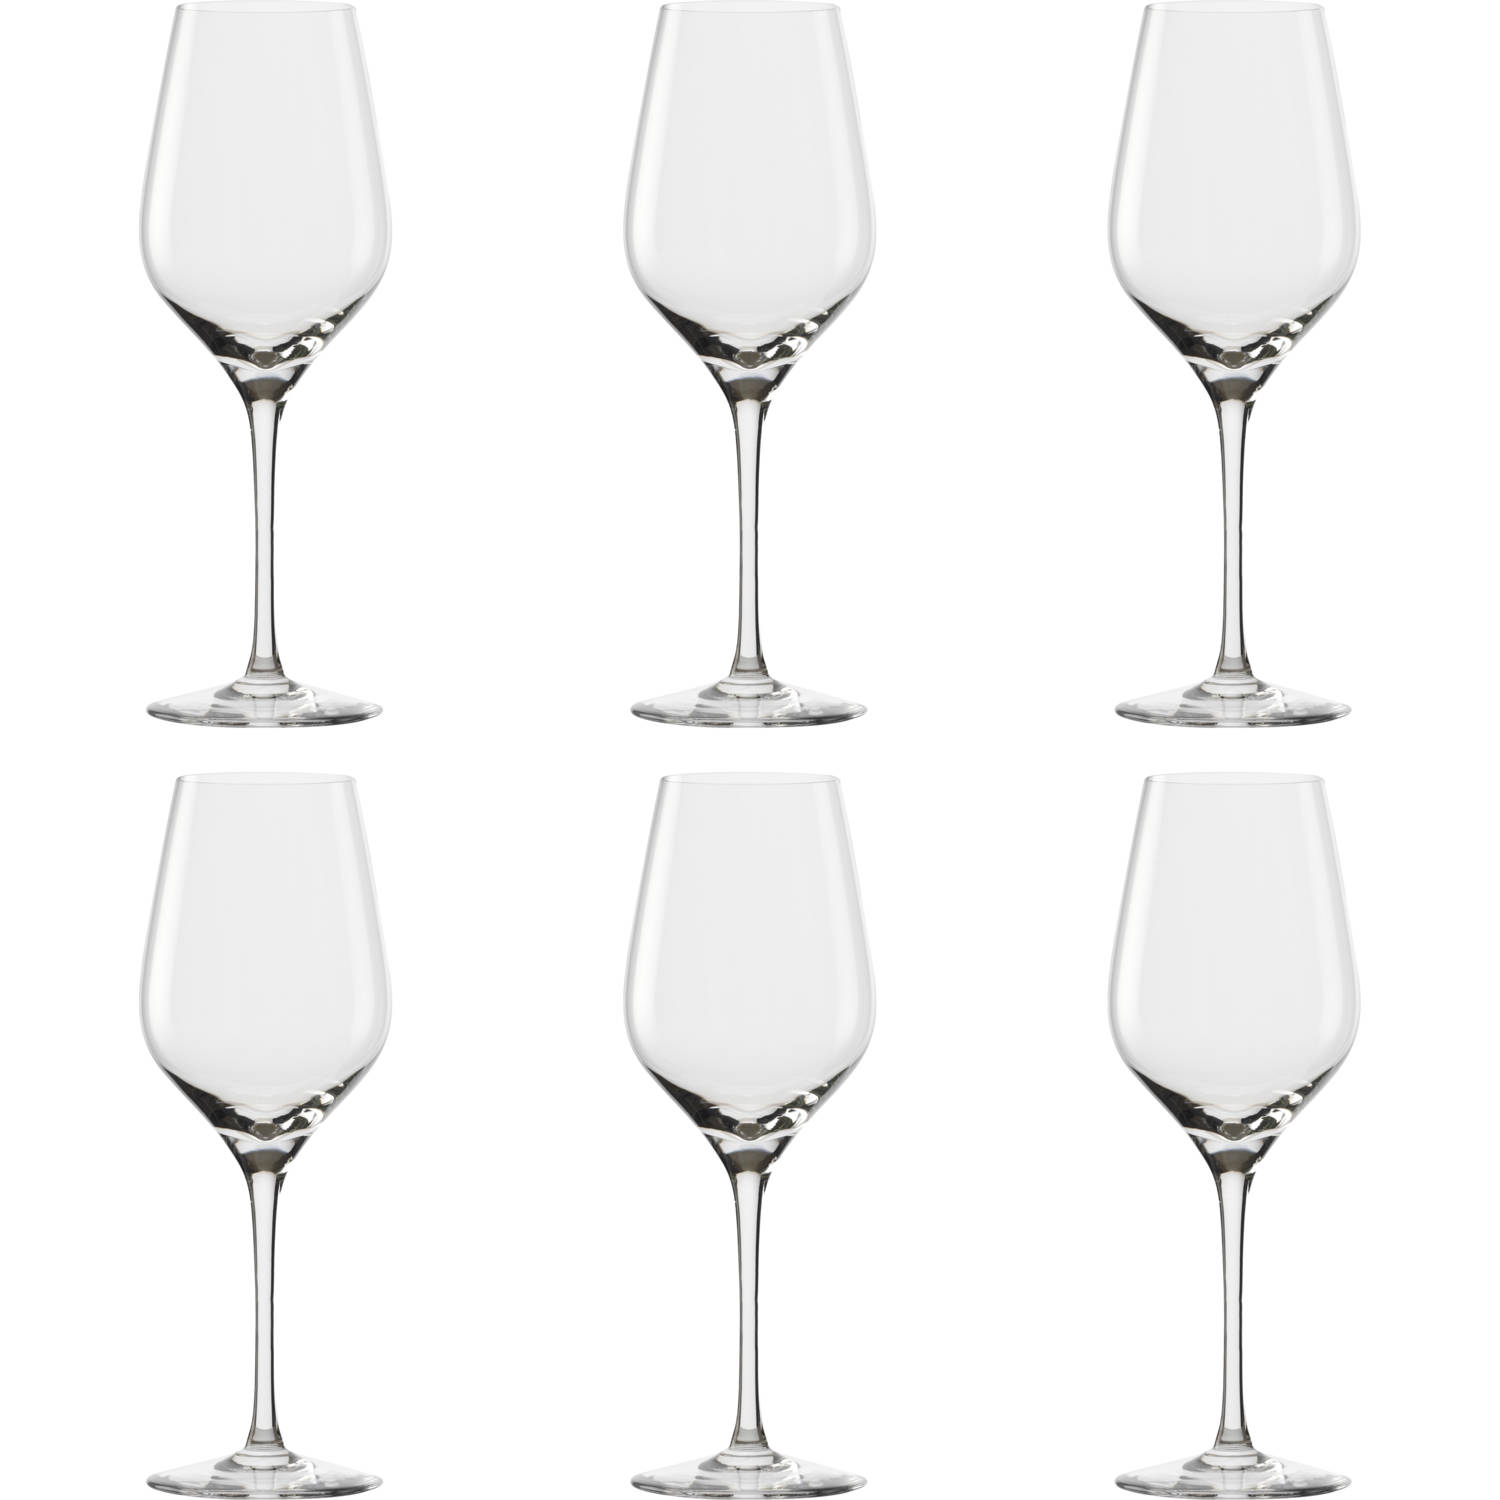 Stolzle Wijnglas Exquisit Royal 42 cl - Transparant 6 stuks